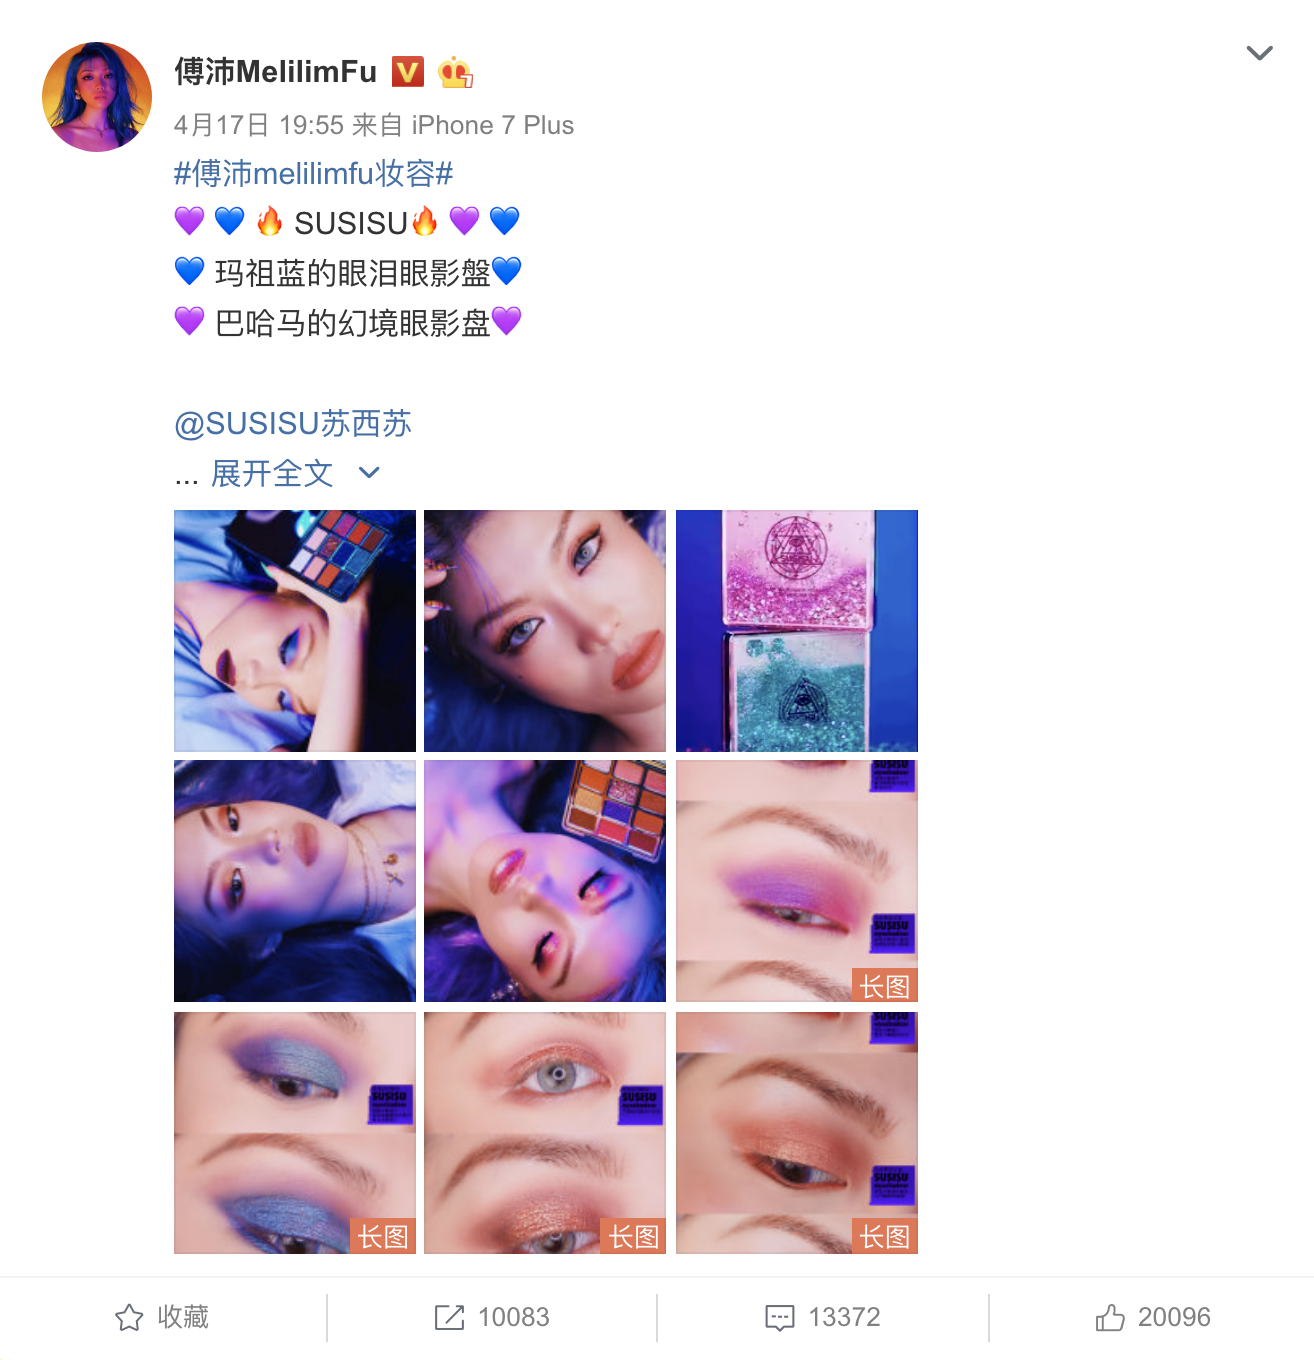 Susisu’s shimmery eyeshadow palette